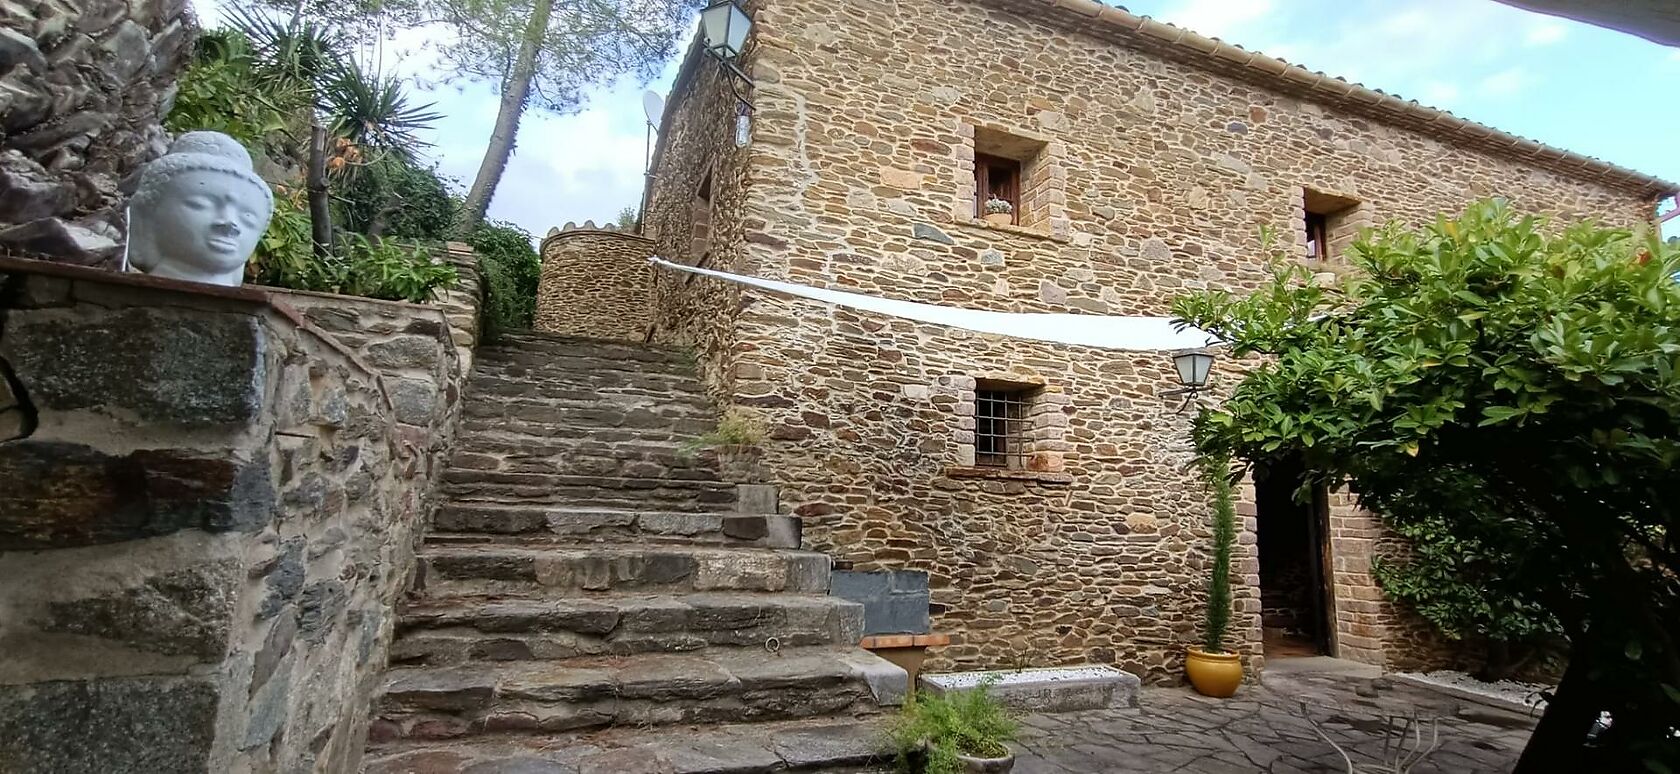 Preciosa masia restaurada